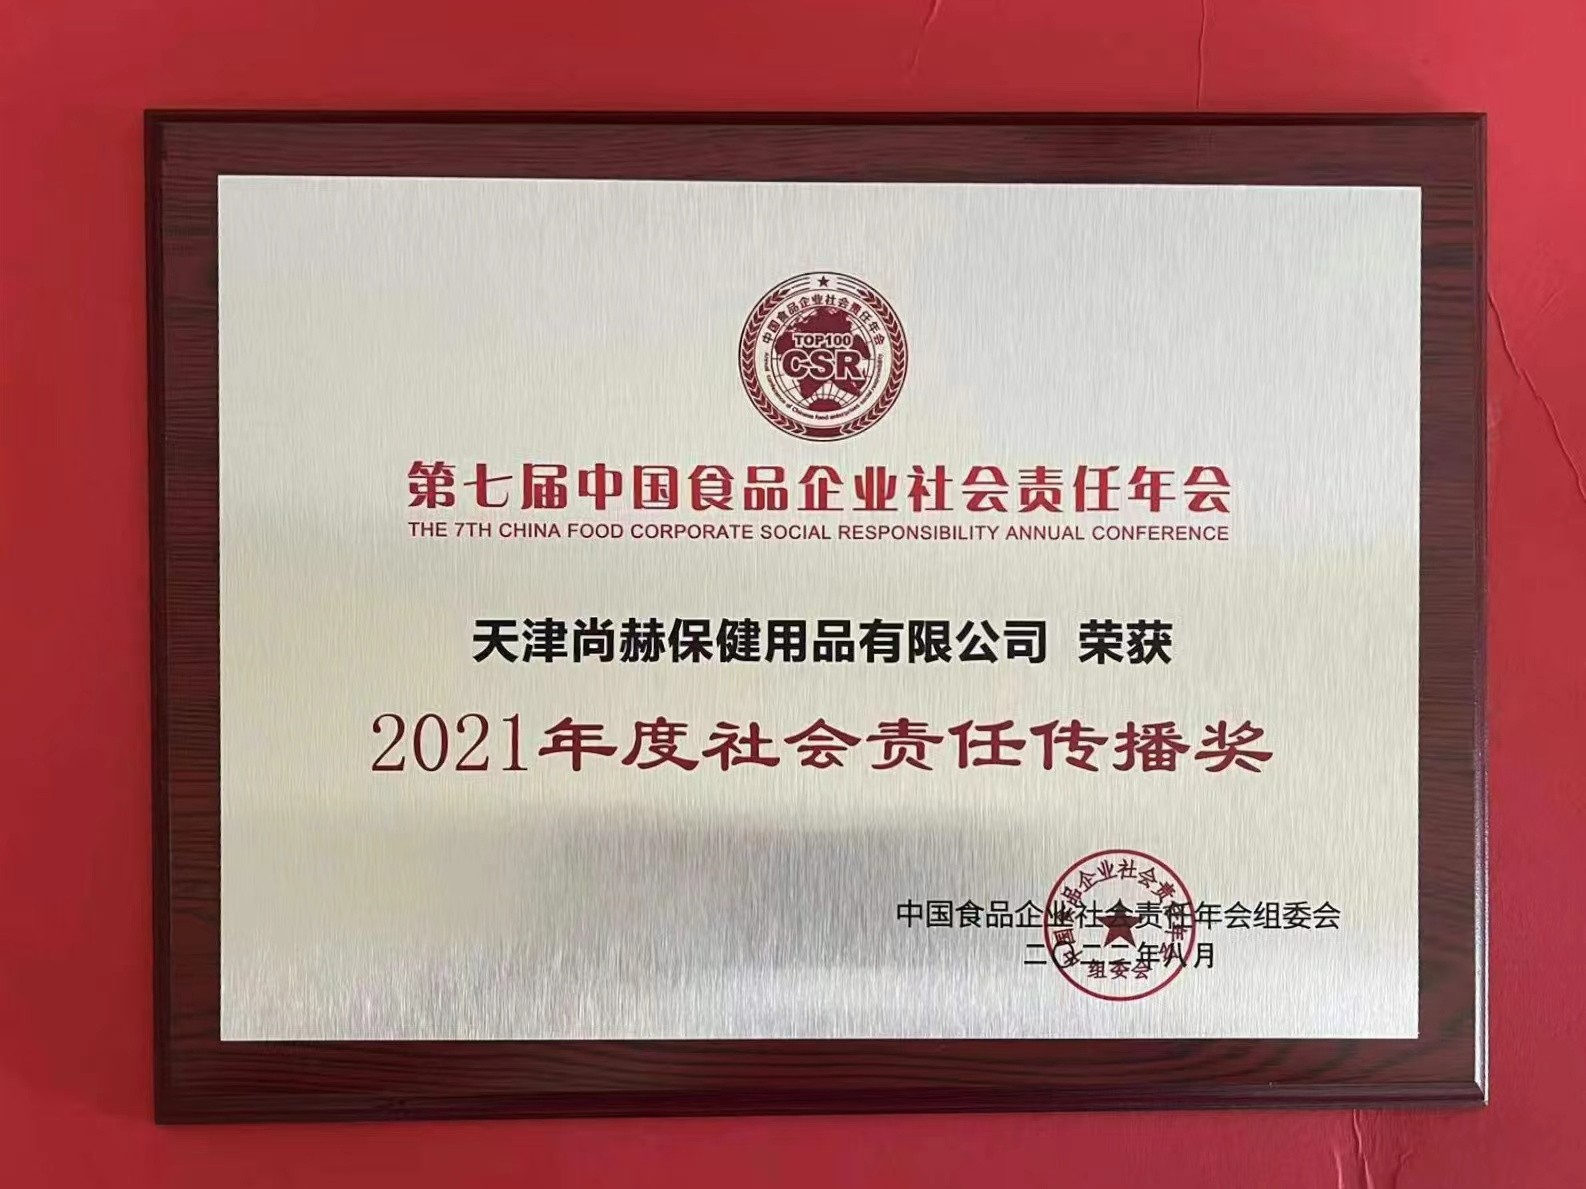 2022年8月-皇家体育(中国)有限责任公司公司荣获中国食品报颁发“2021年度社会责任传播奖”